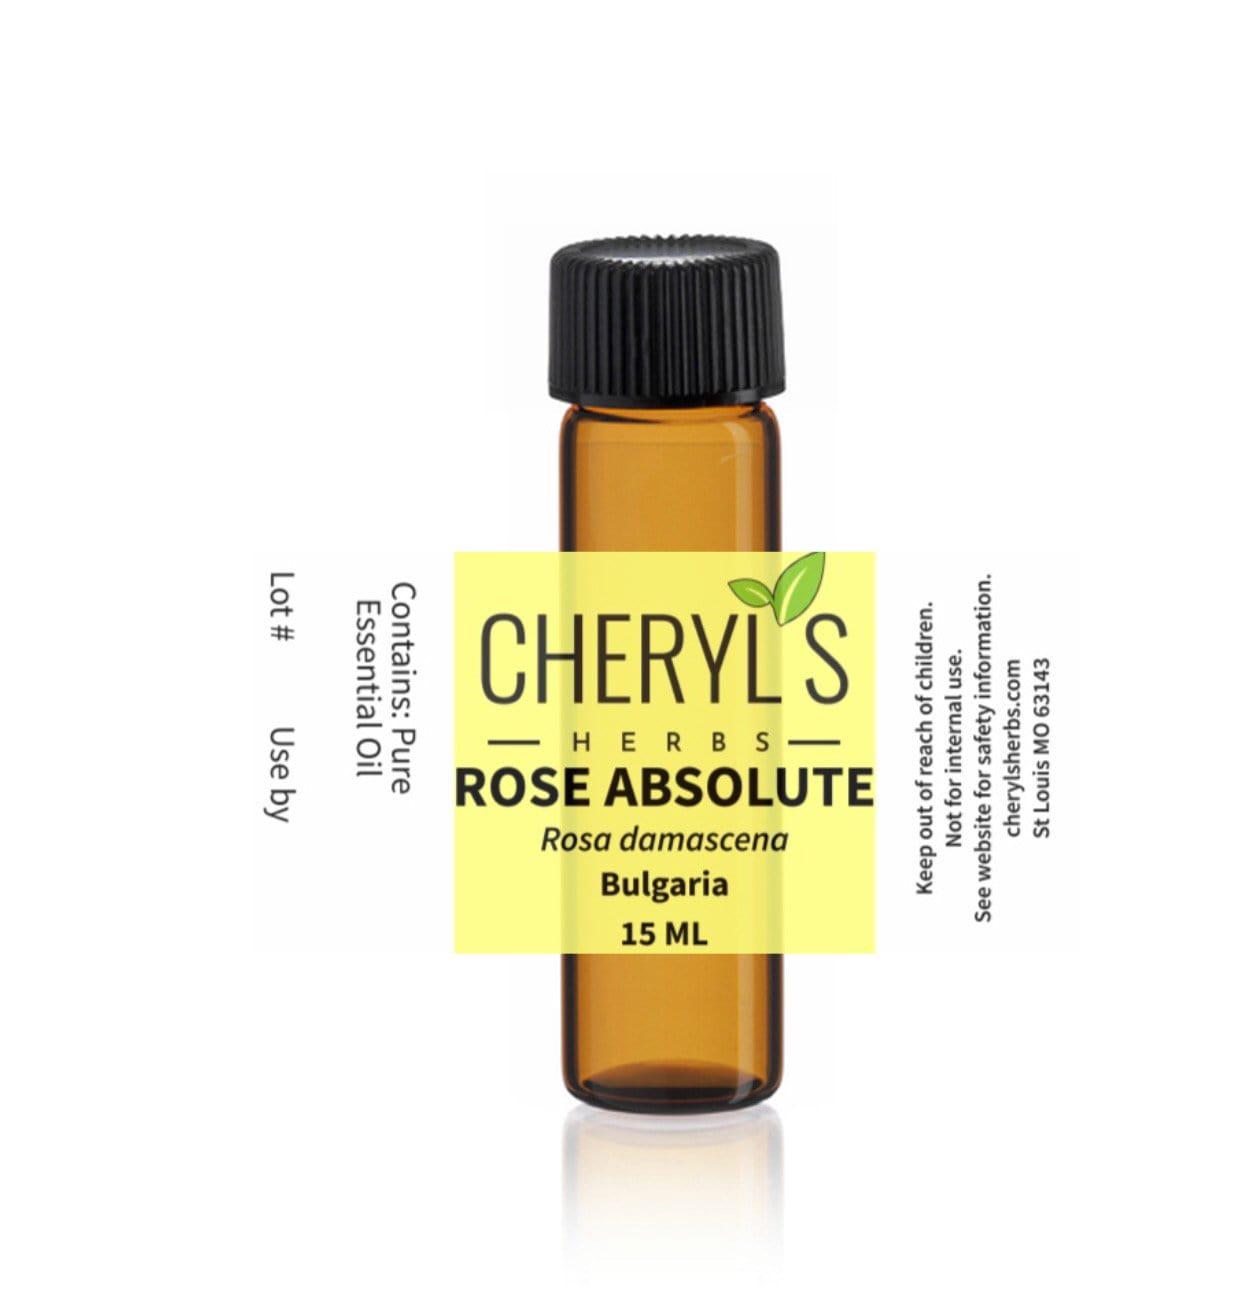 ROSE ABSOLUTE - Cheryls Herbs